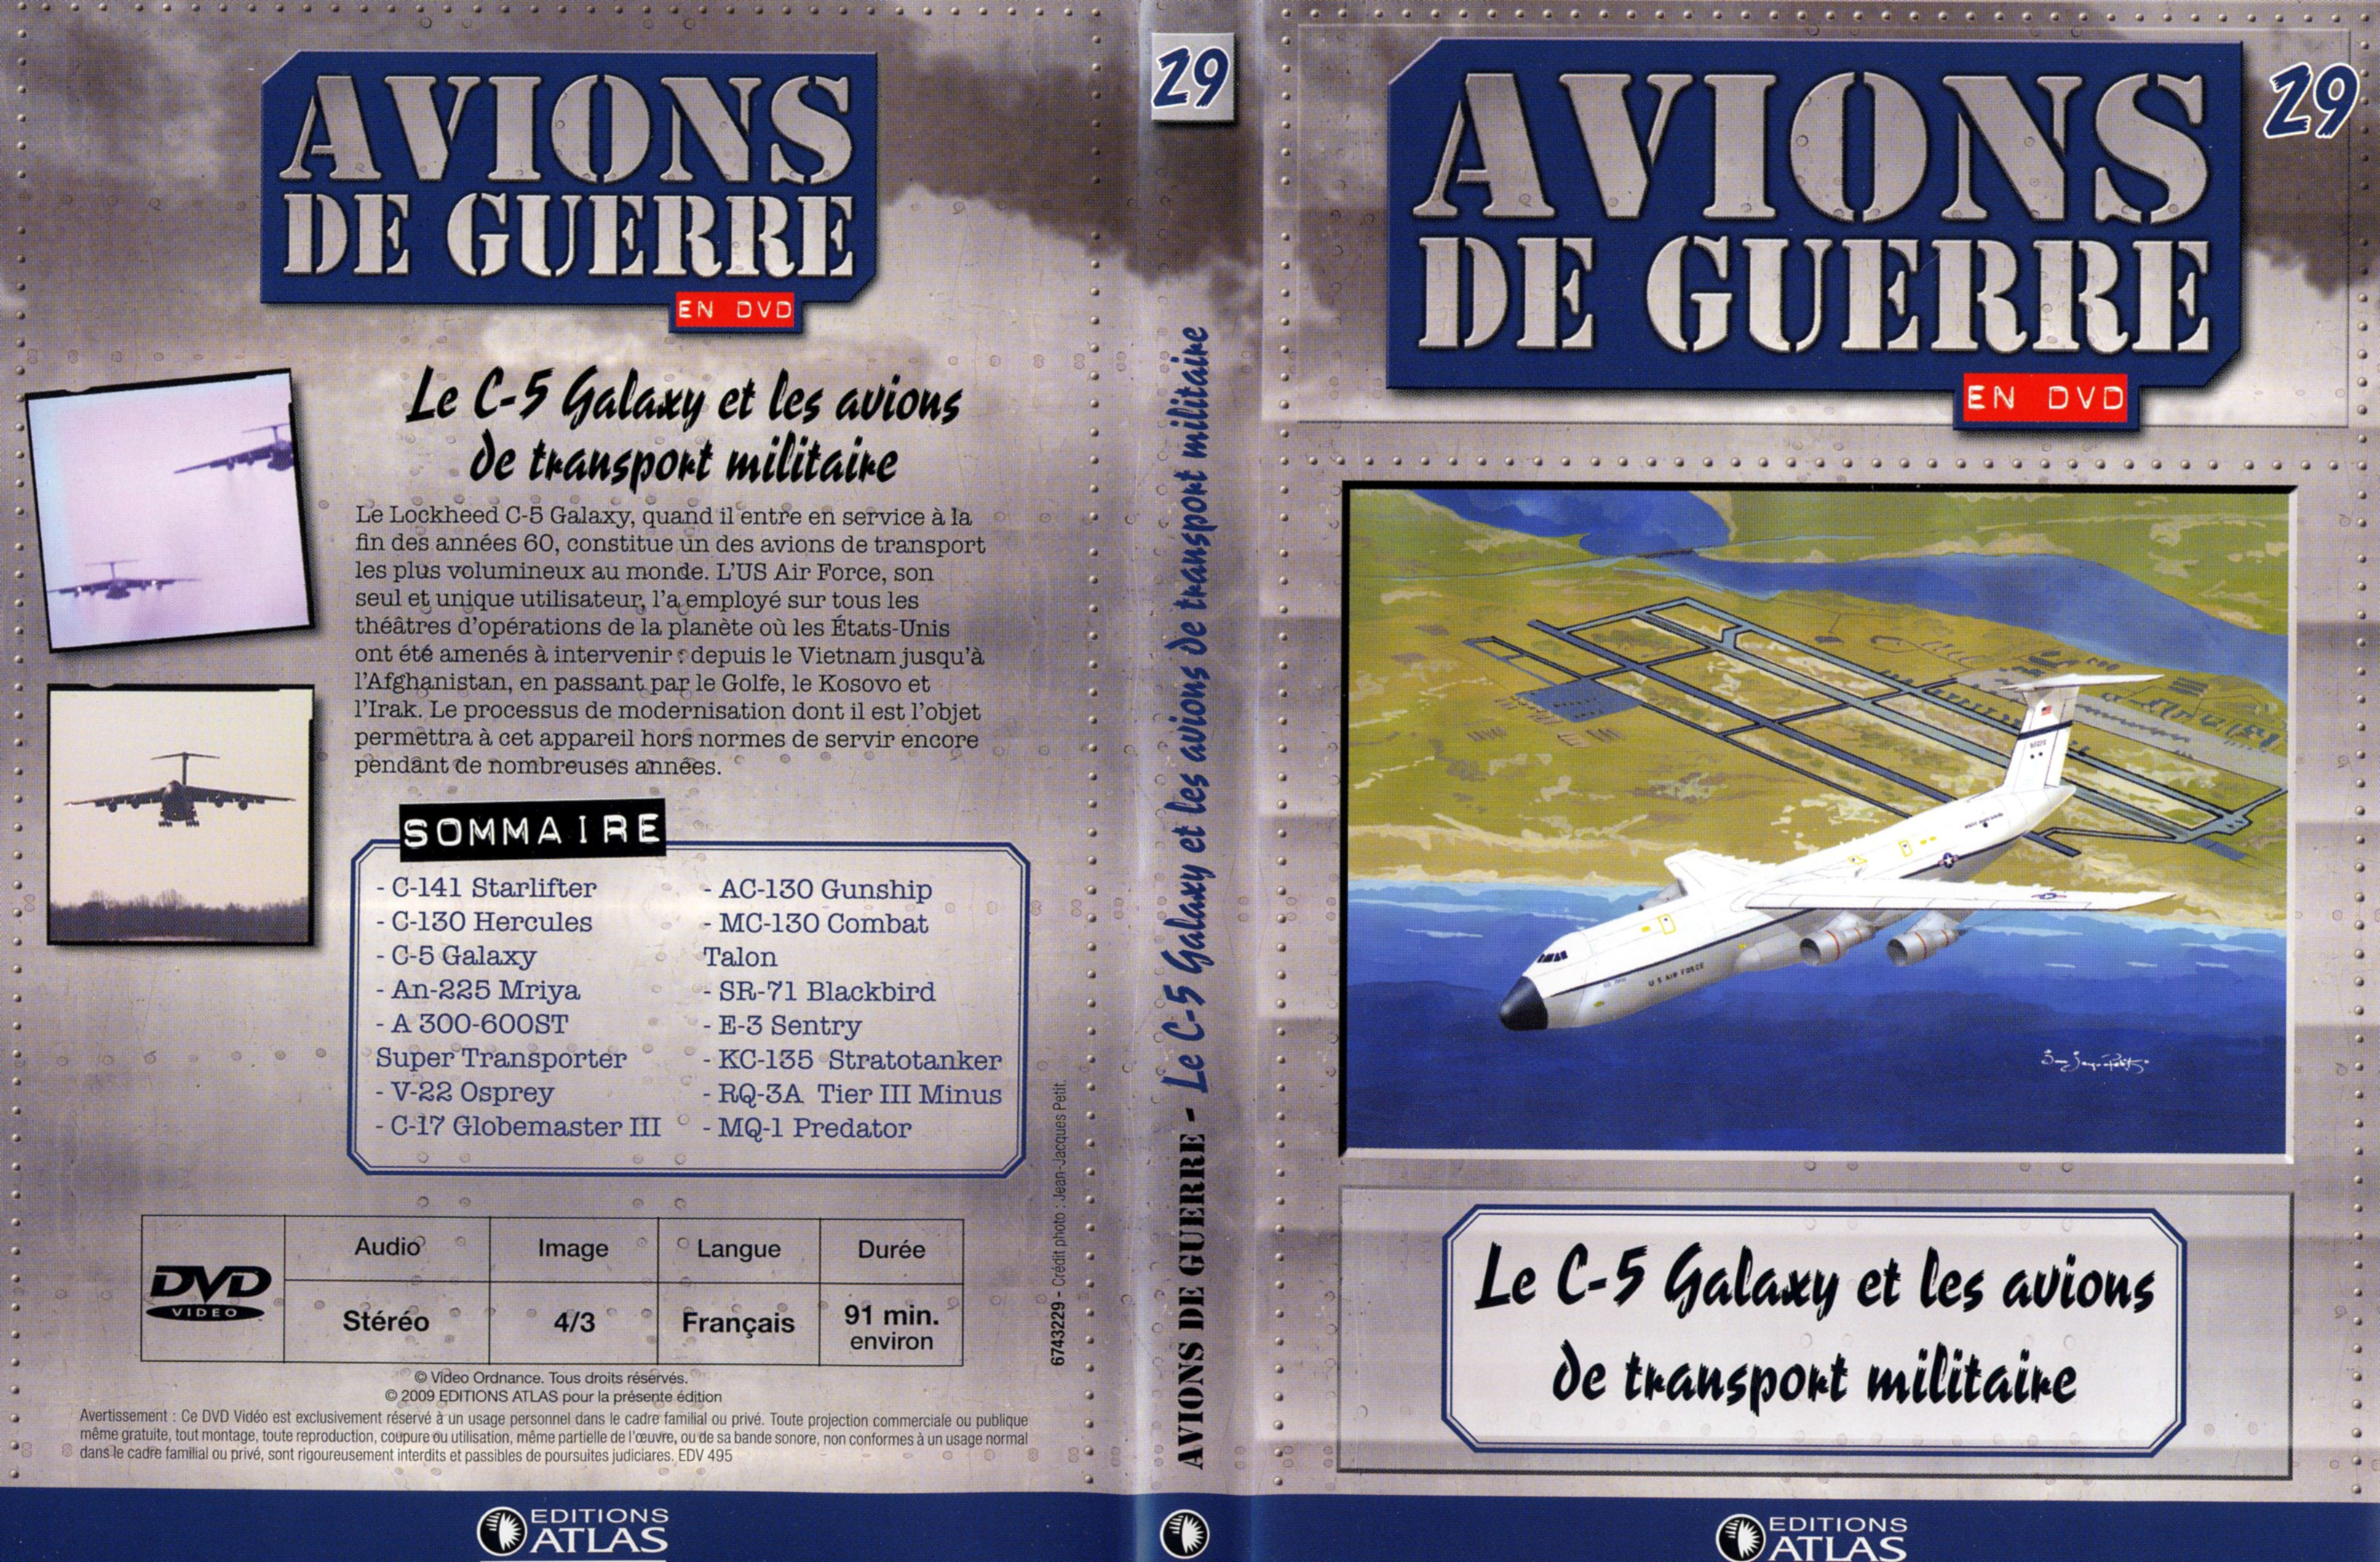 Jaquette DVD Avions de guerre en DVD vol 29